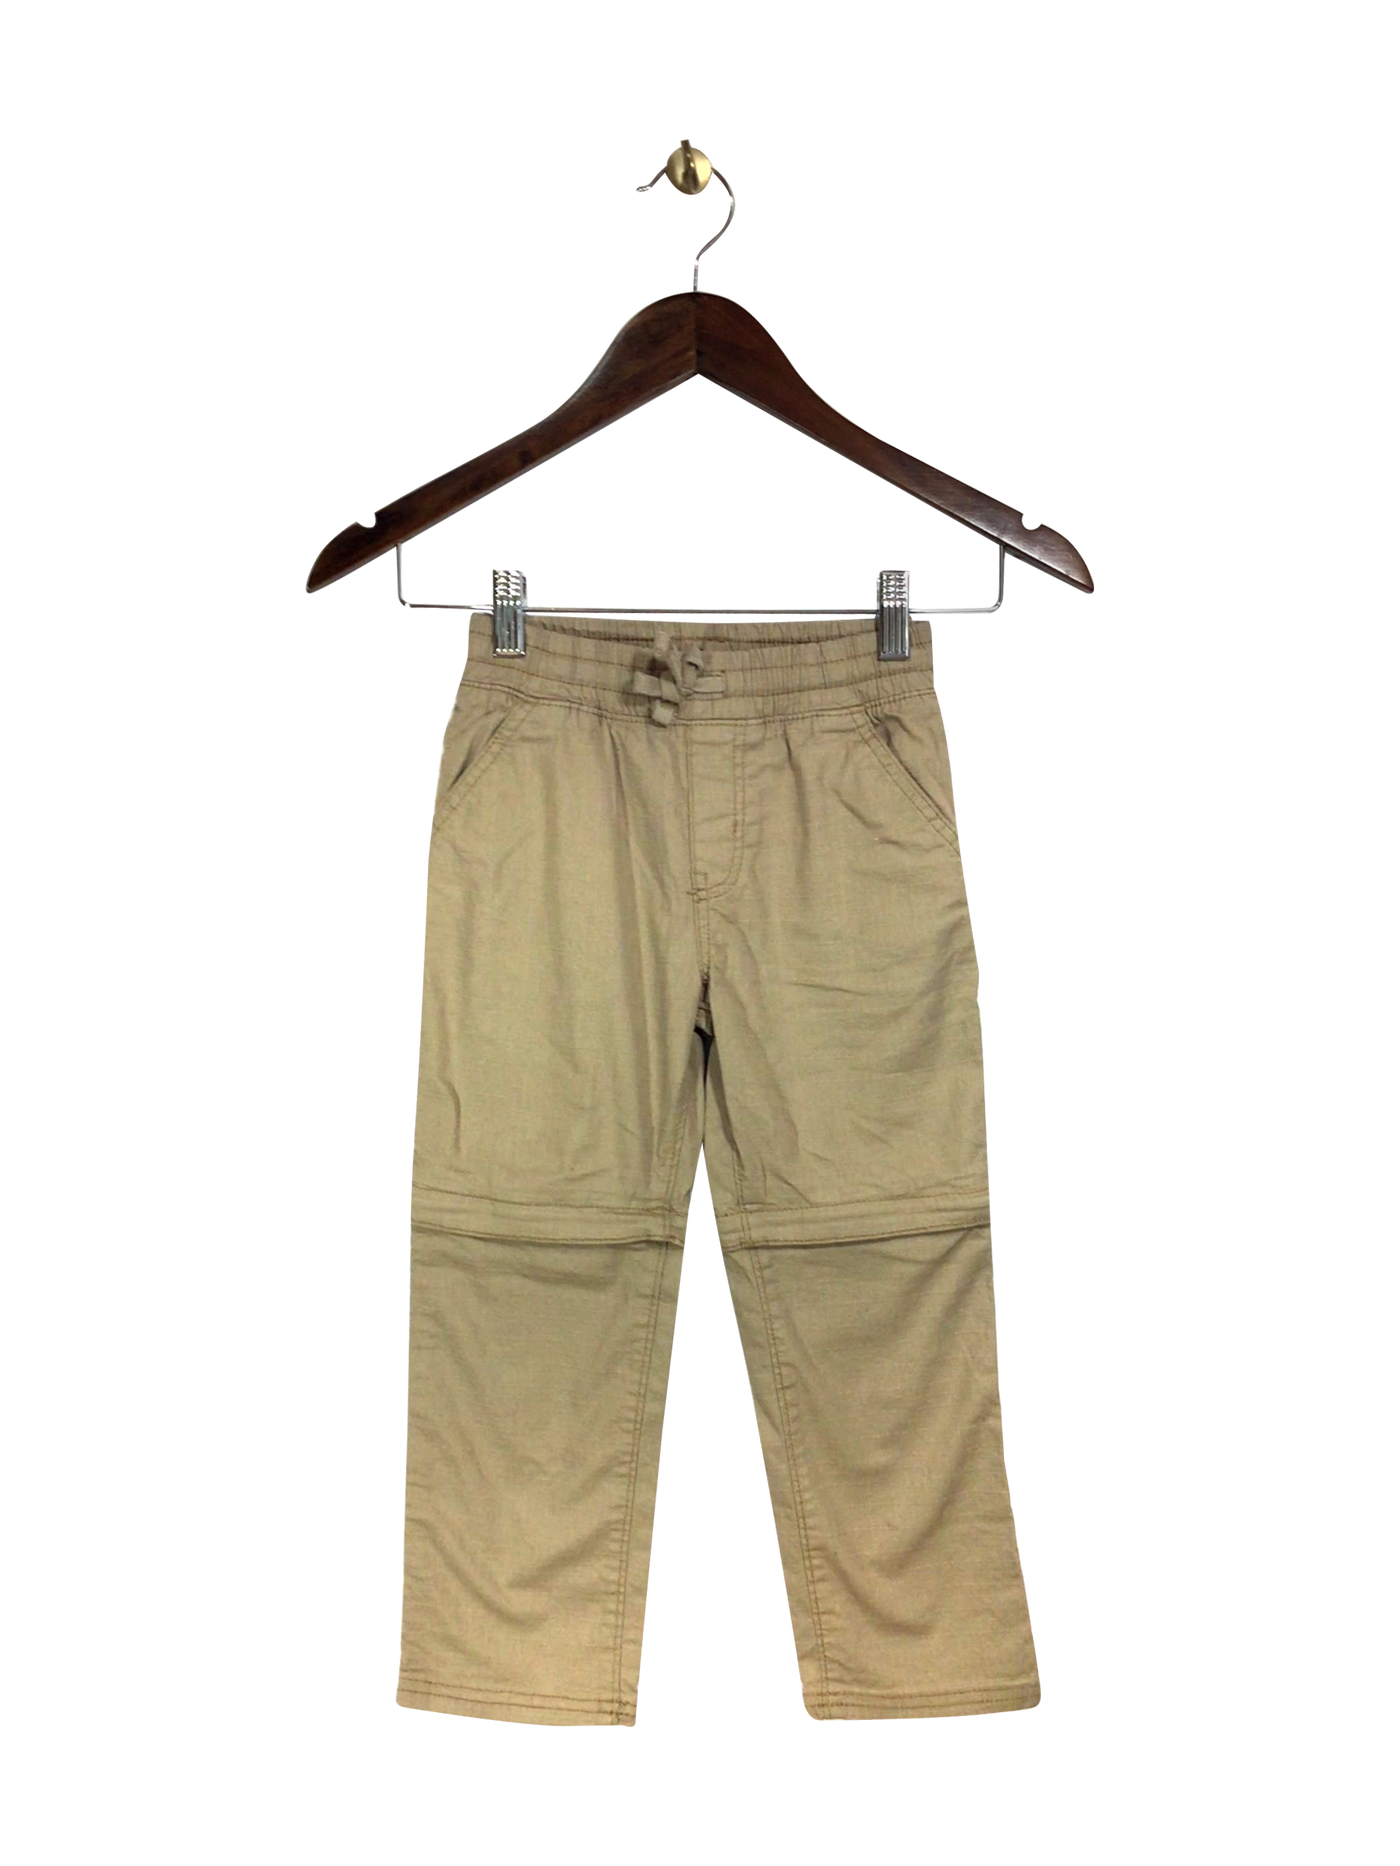 JOE FRESH Regular fit Pant in Beige - Size 5 | 7.99 $ KOOP